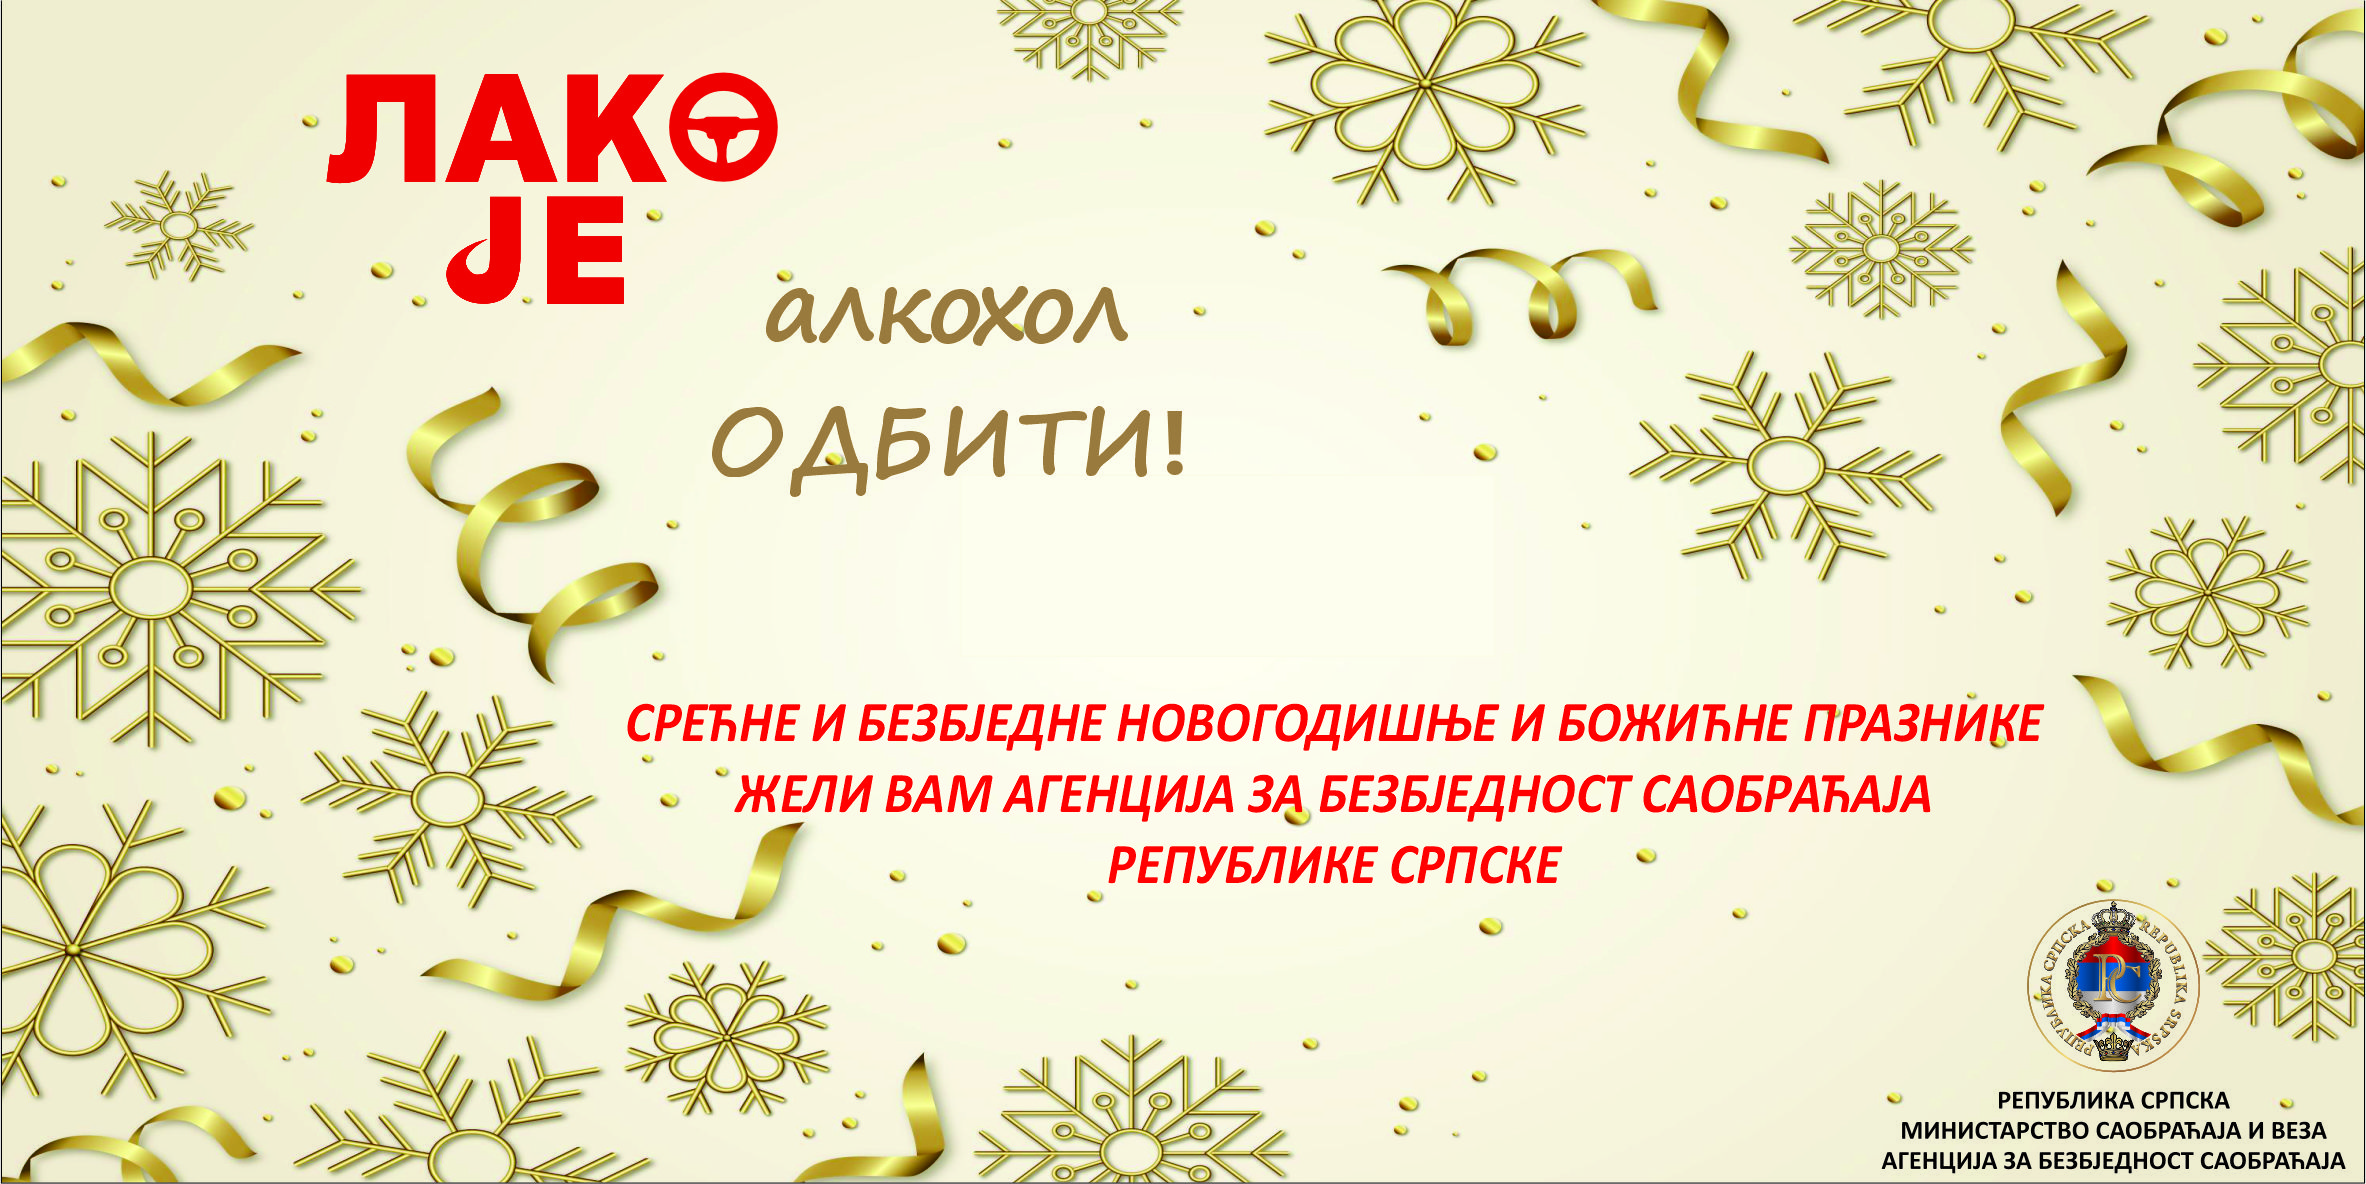 Срећне и безбједне празнике жели вам Агенција за безбједност саобраћаја Републике Српске